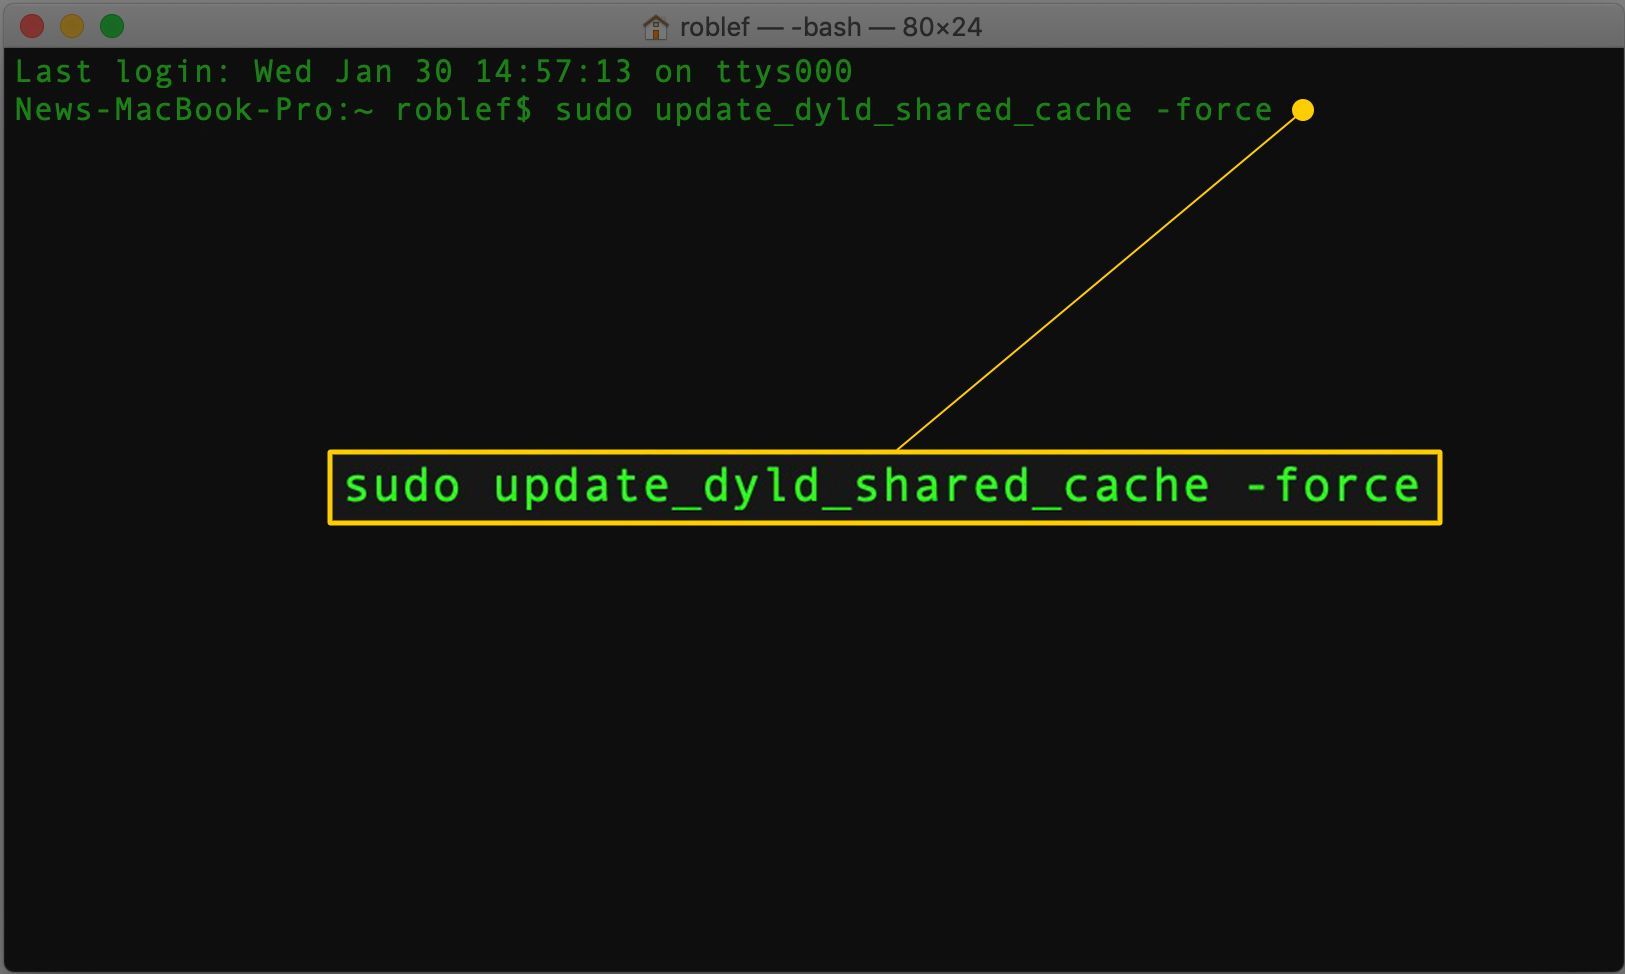 Команда sudo update_dyld_shared_cashe -force в терминале MacOS